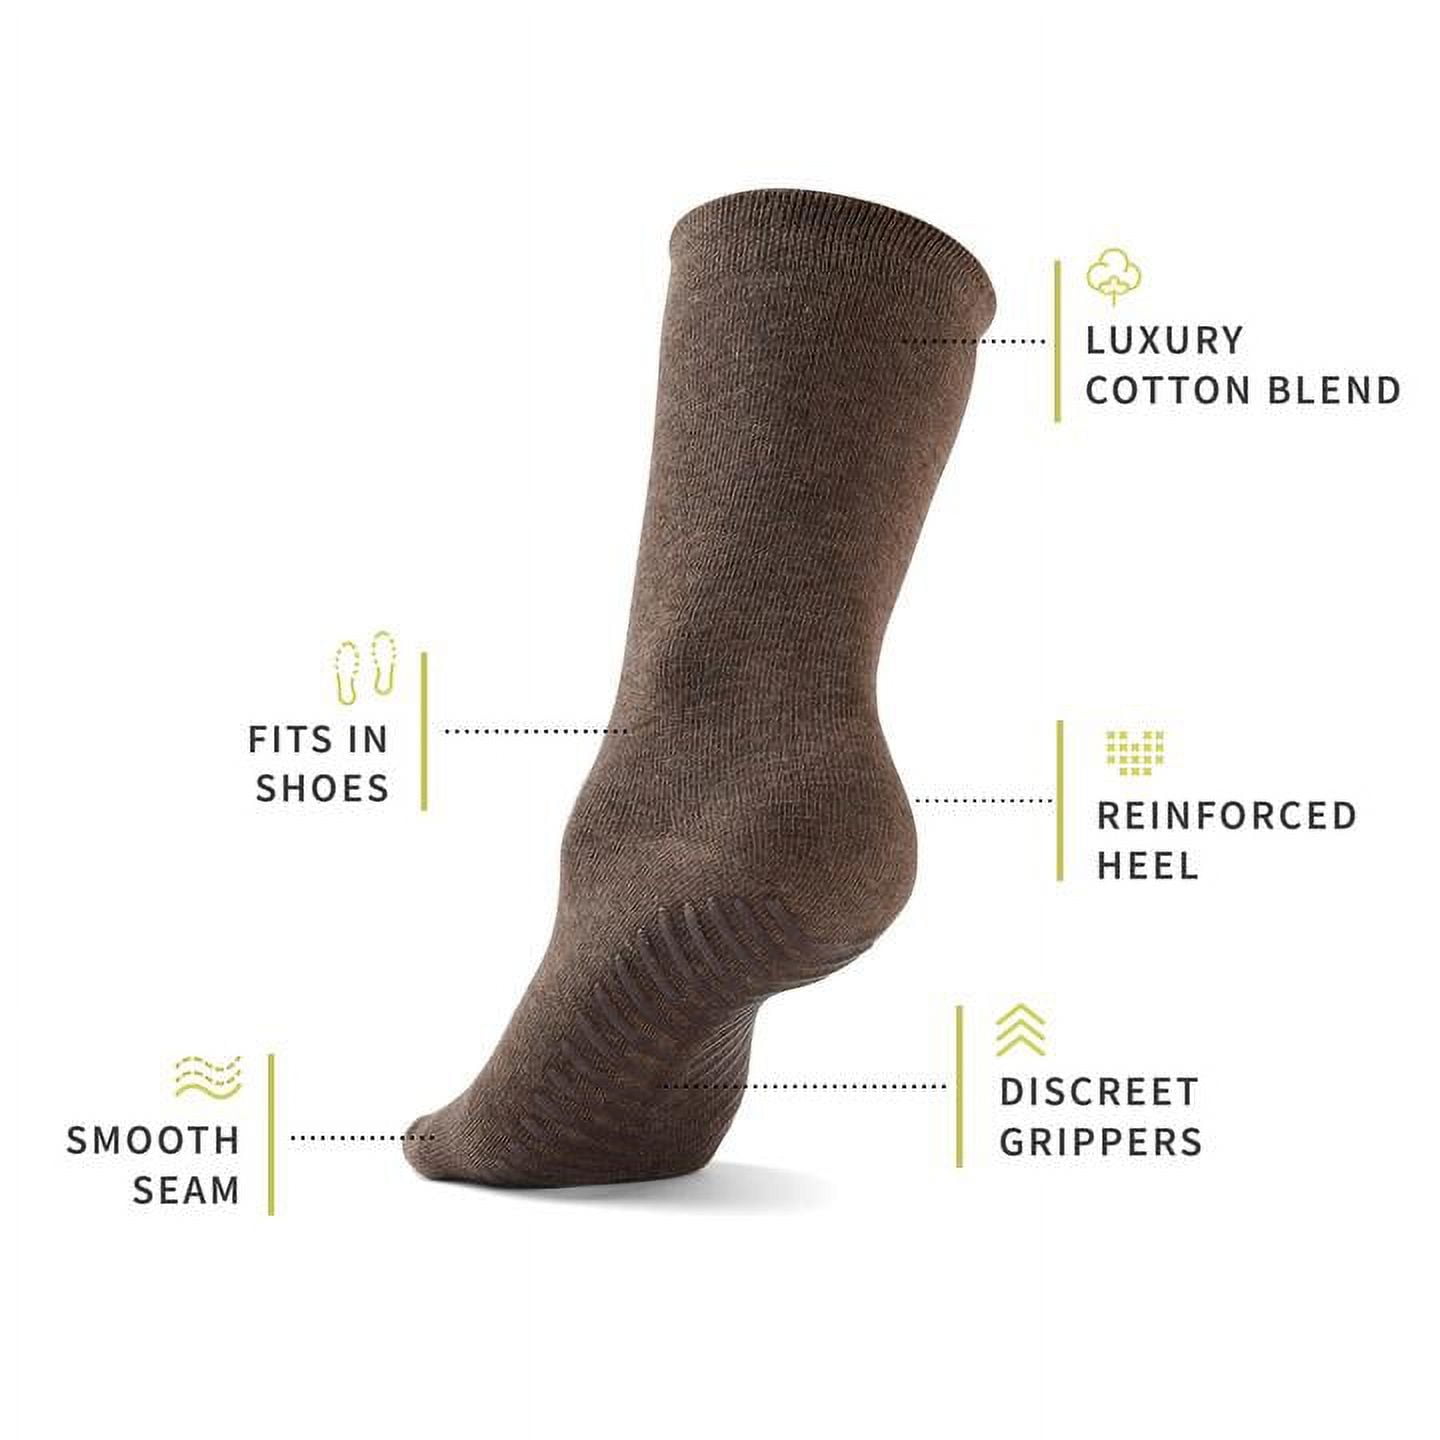 Grip Socks - Non-Slip Socks for Women and Men - Hospital Socks - 3